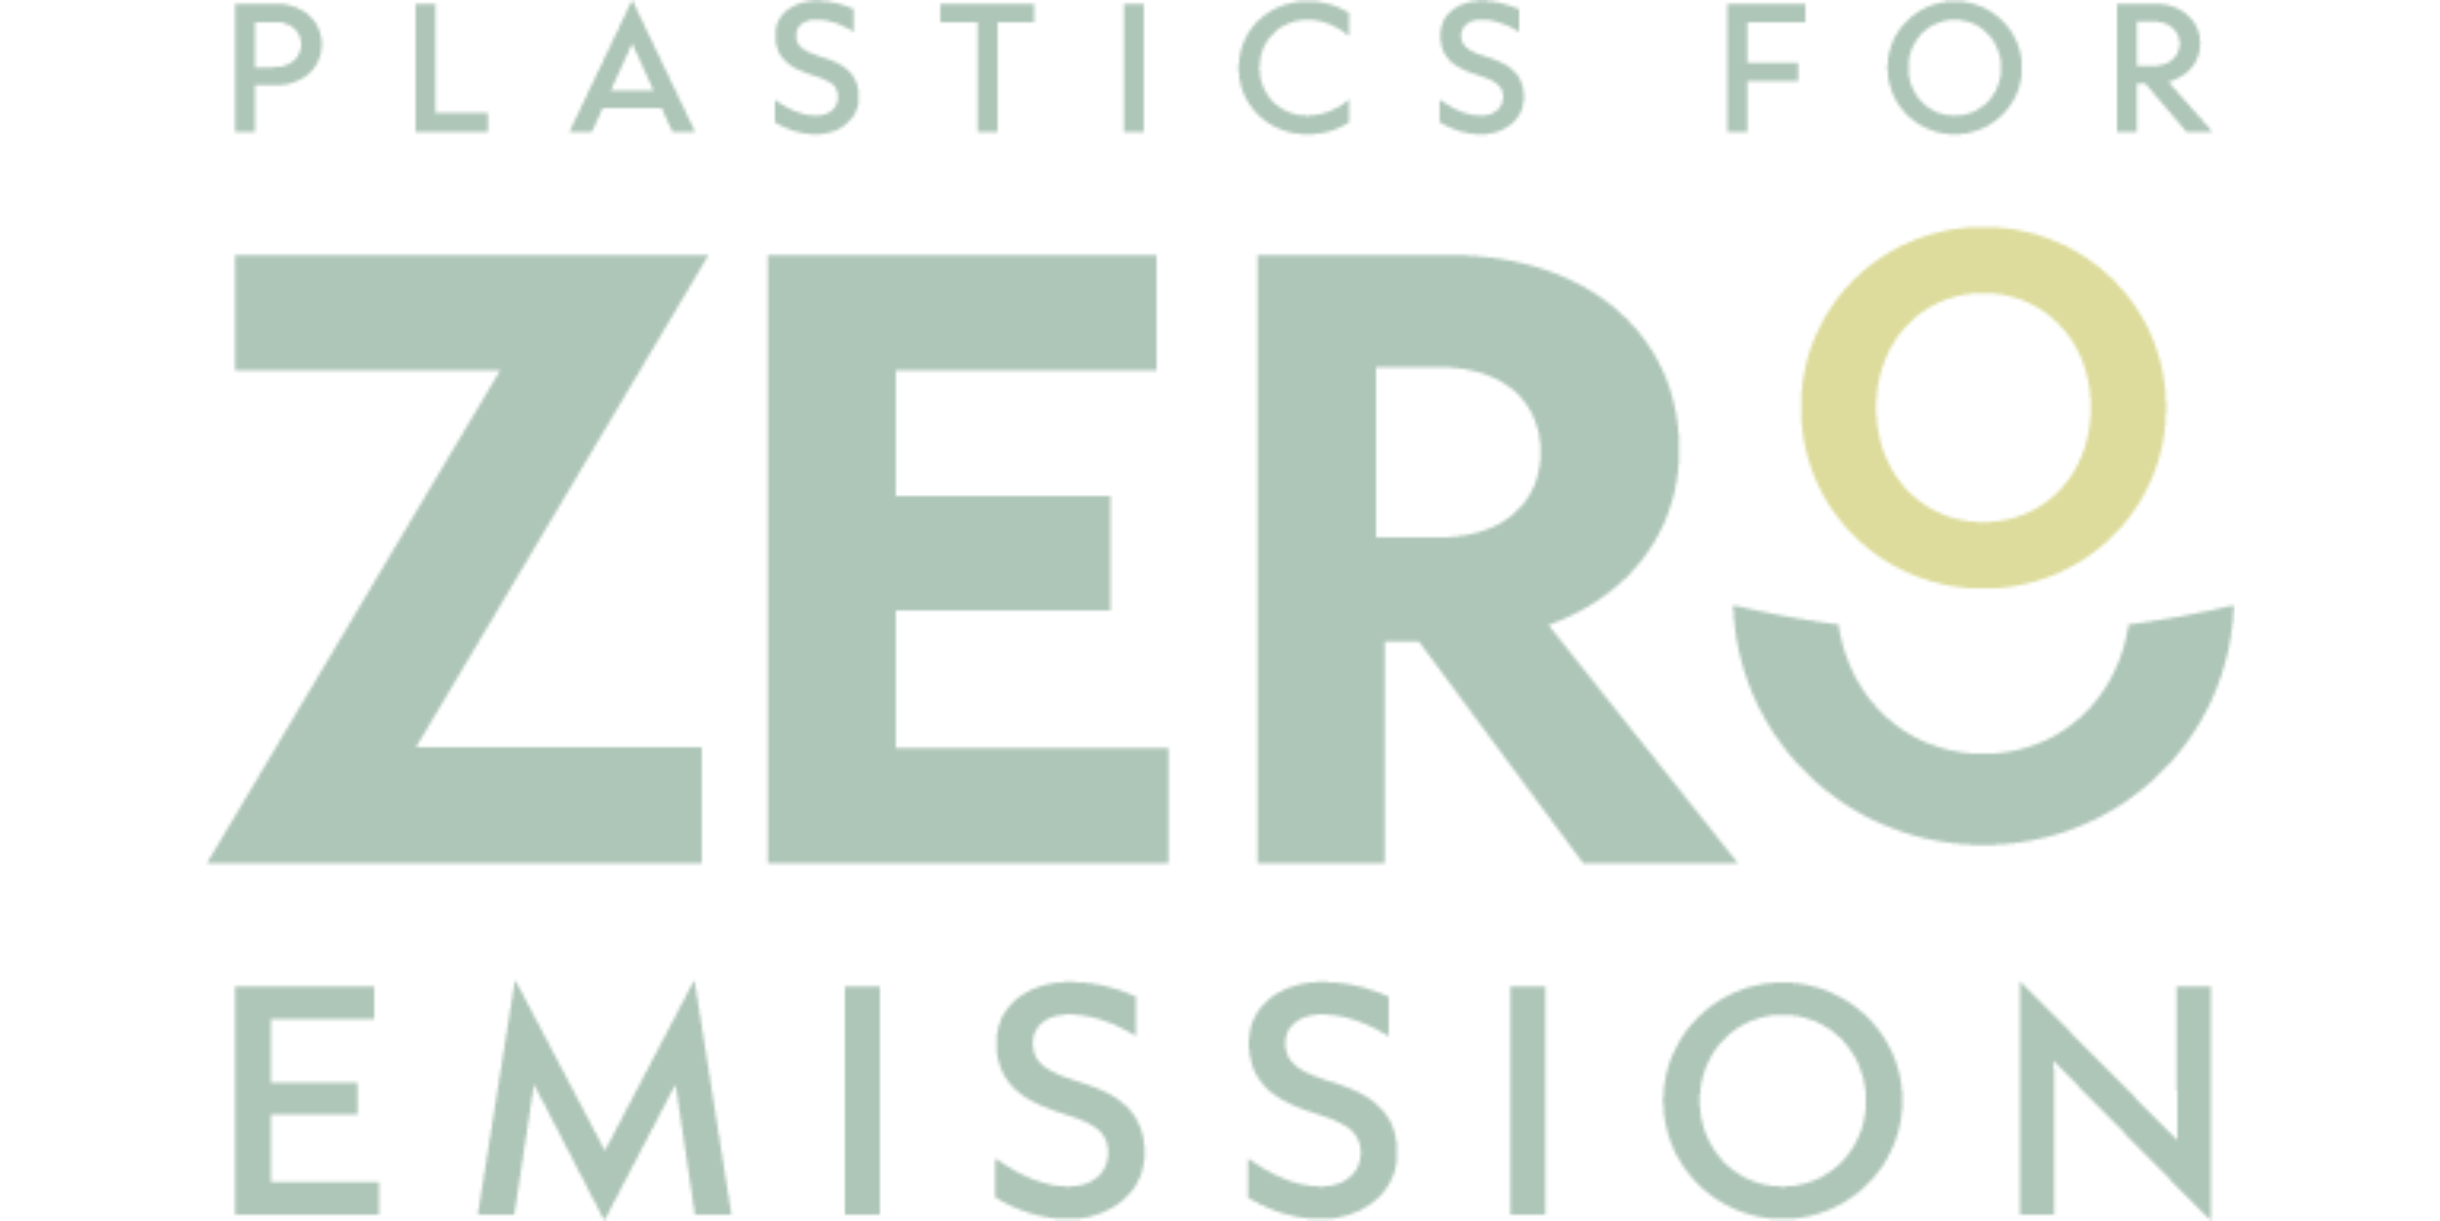 Plastics for Zero Emissions